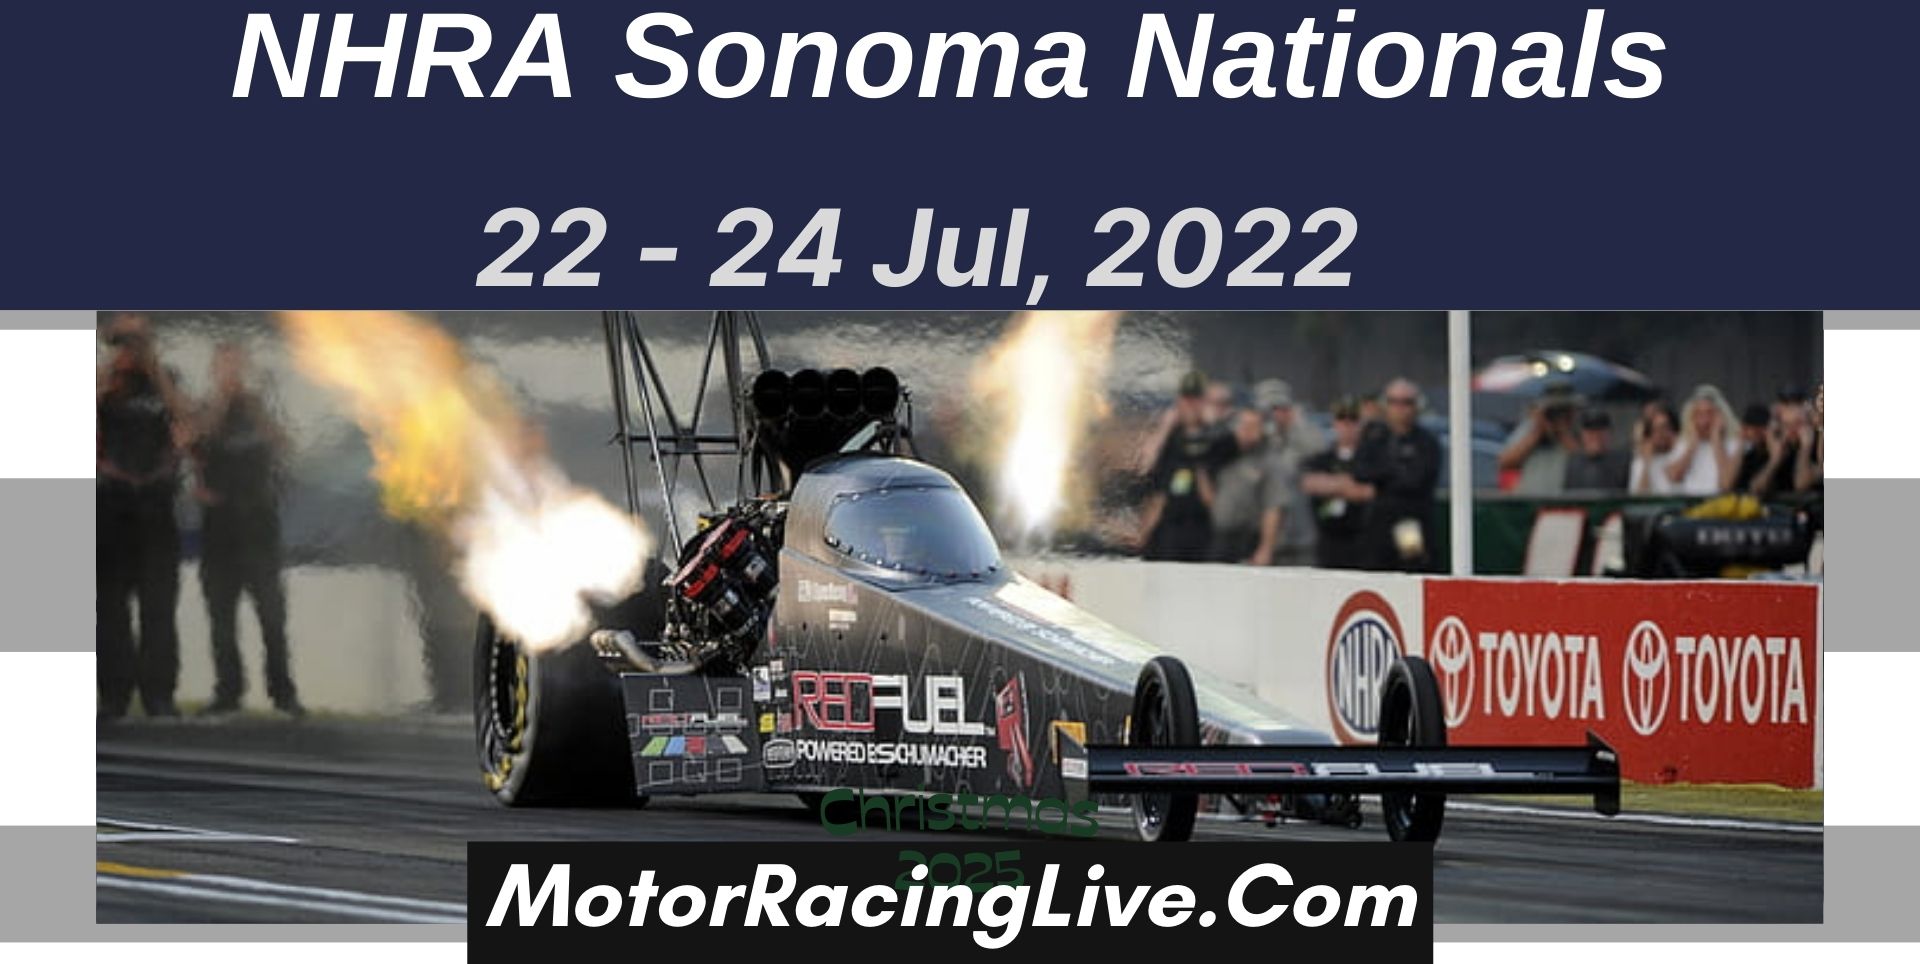 NHRA Sonoma Nationals 2022 Live Stream